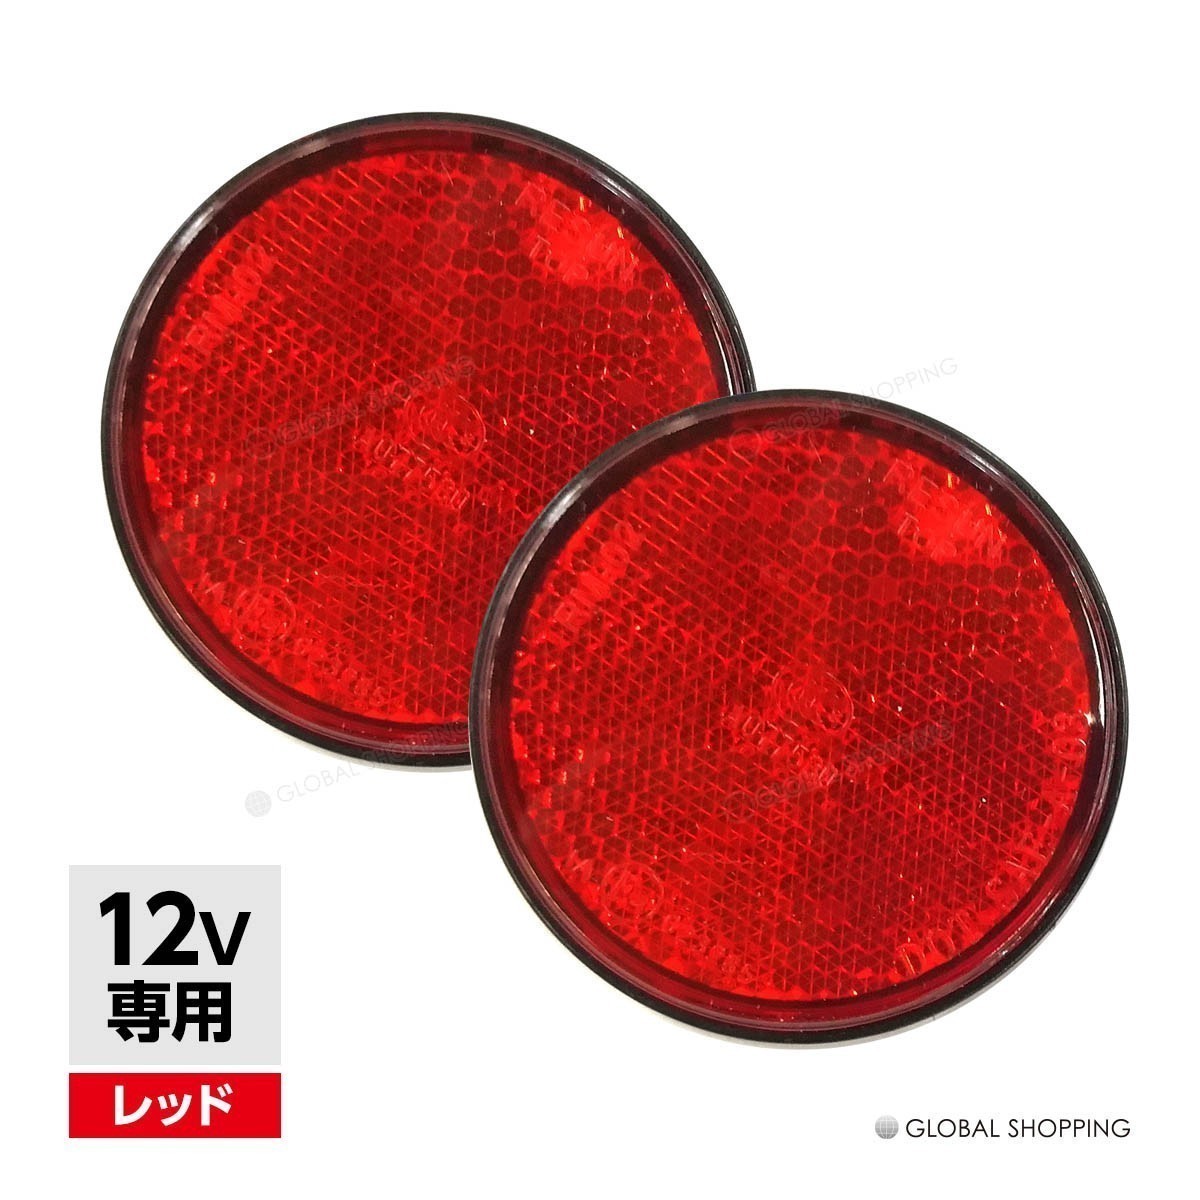 汎用 12V LEDリフレクター 反射板 丸形 レッド 赤 サイドマーカー トラック トレーラー スモール ブレーキ 連動可能 サイドマーカー 2個_BLR-001-R-2